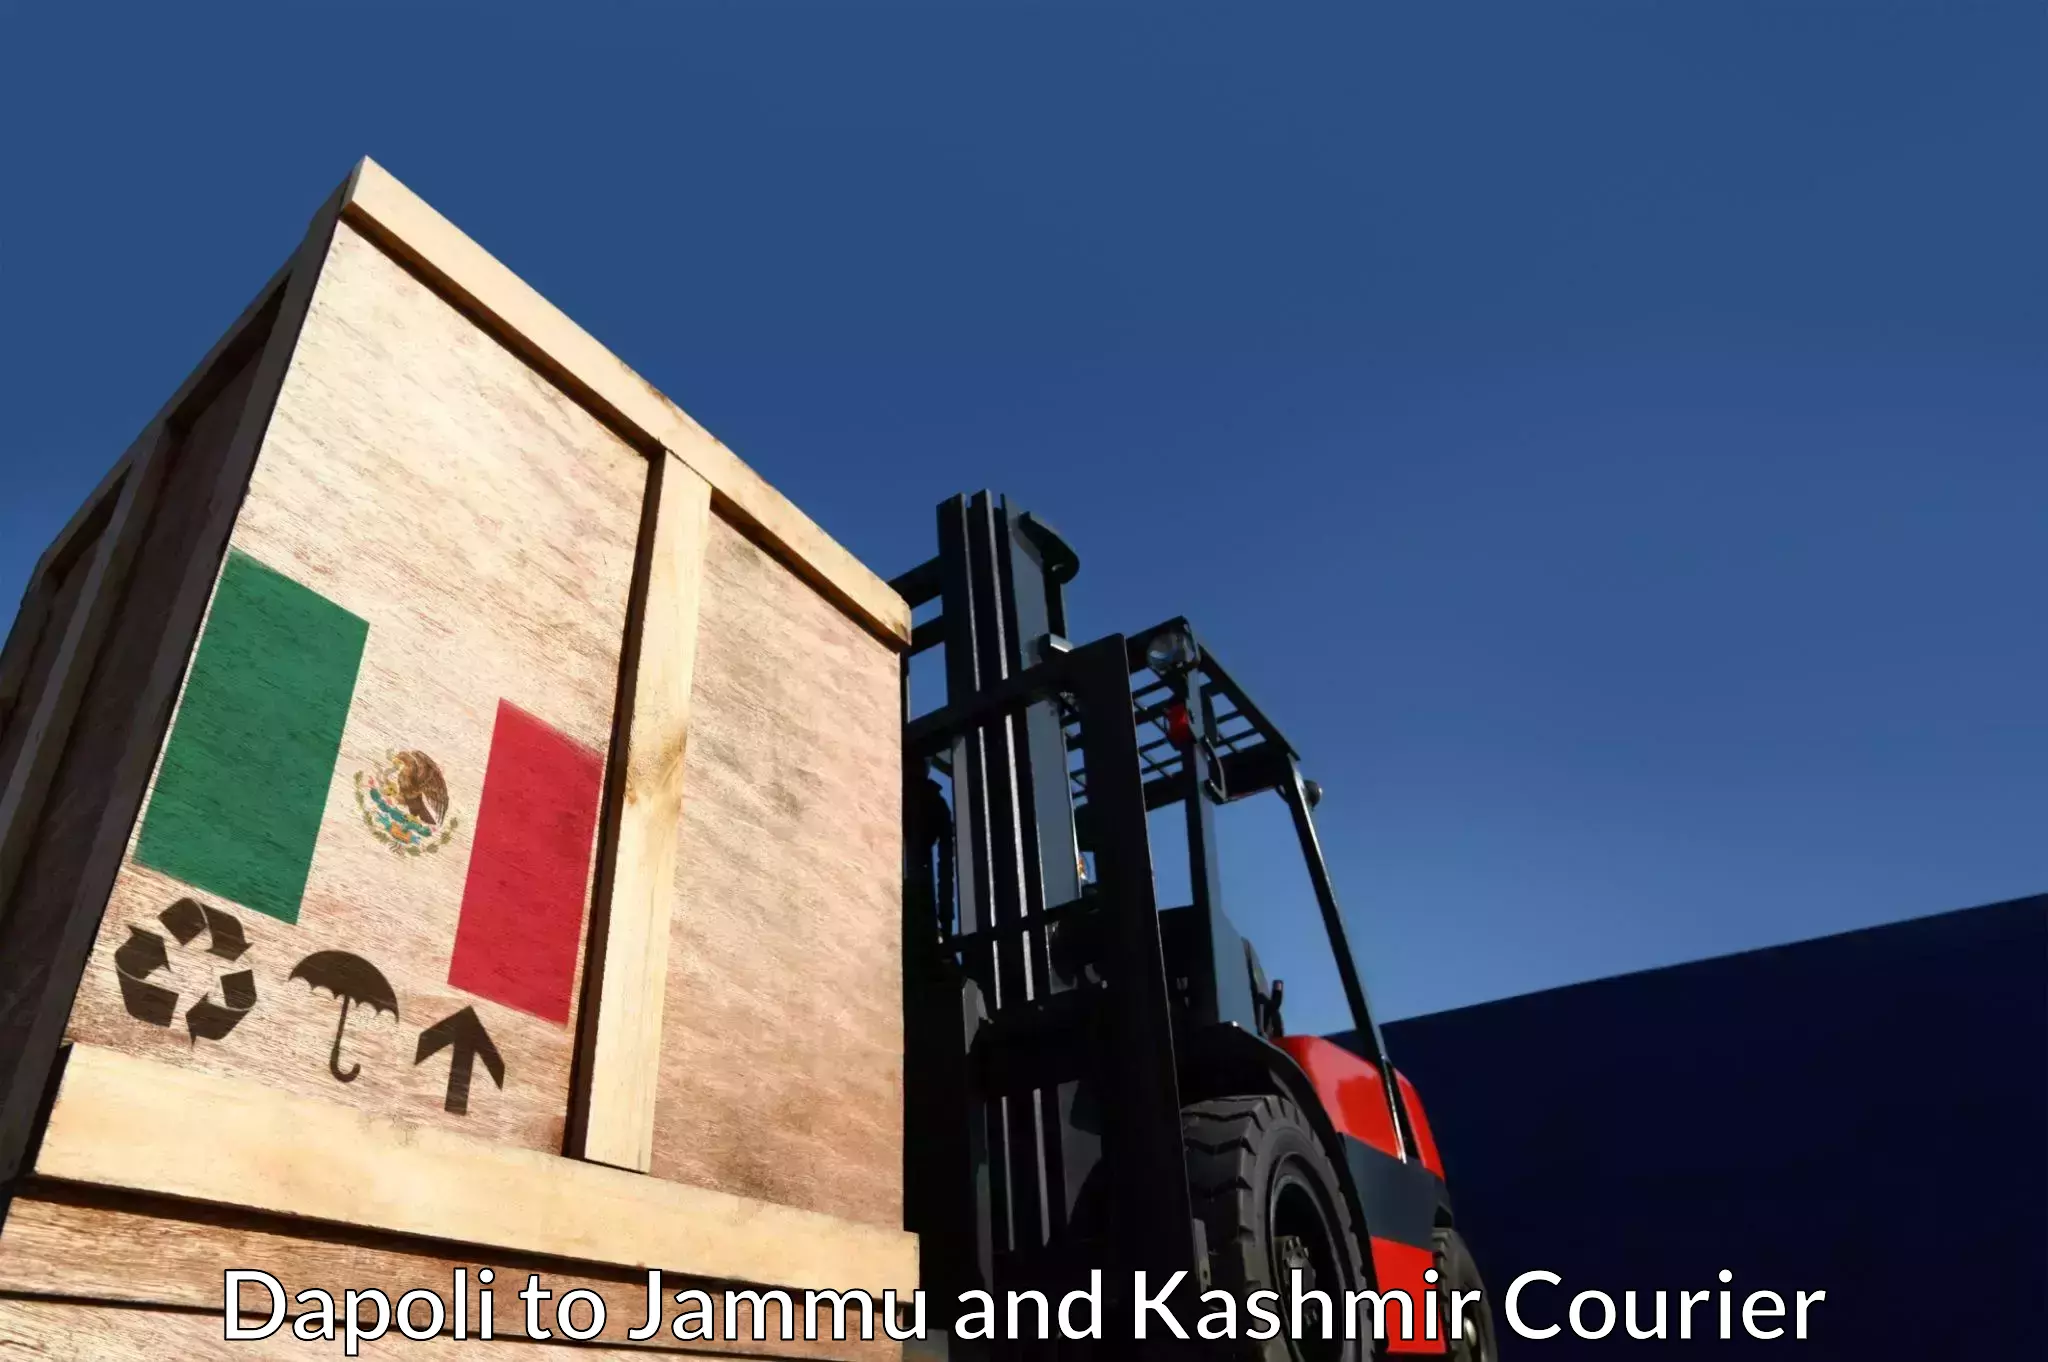 Global shipping networks Dapoli to Jammu and Kashmir